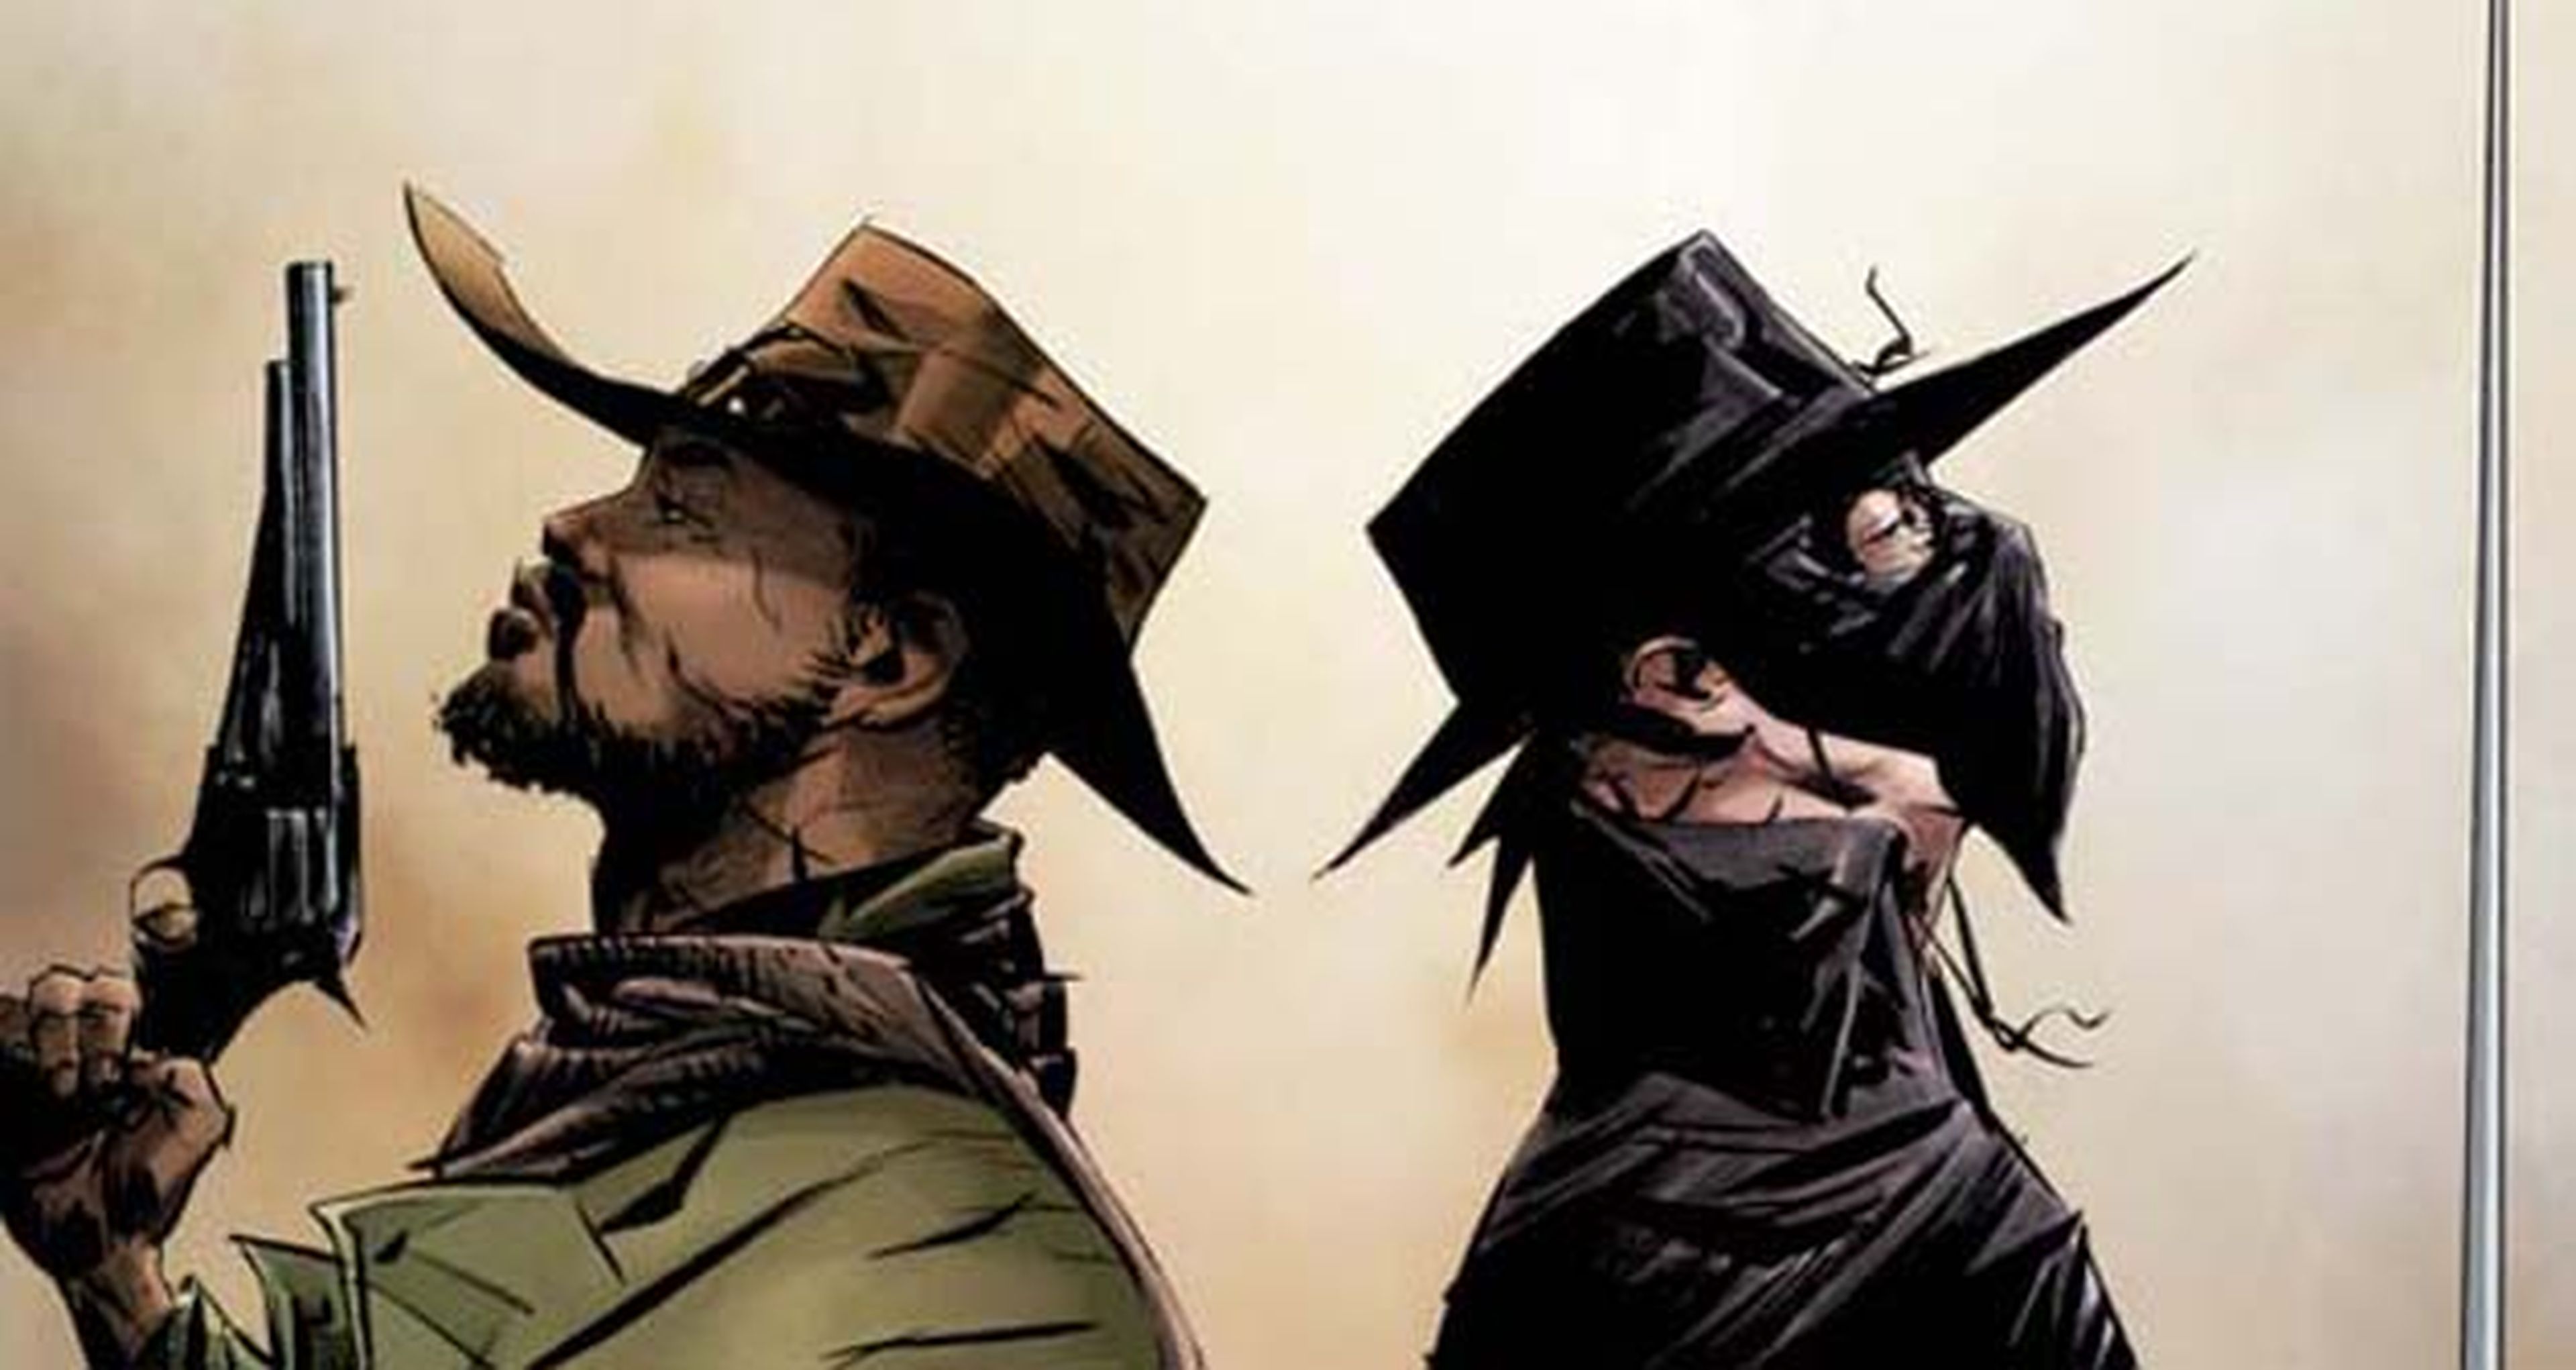 Adelanto del cómic de Django y El Zorro